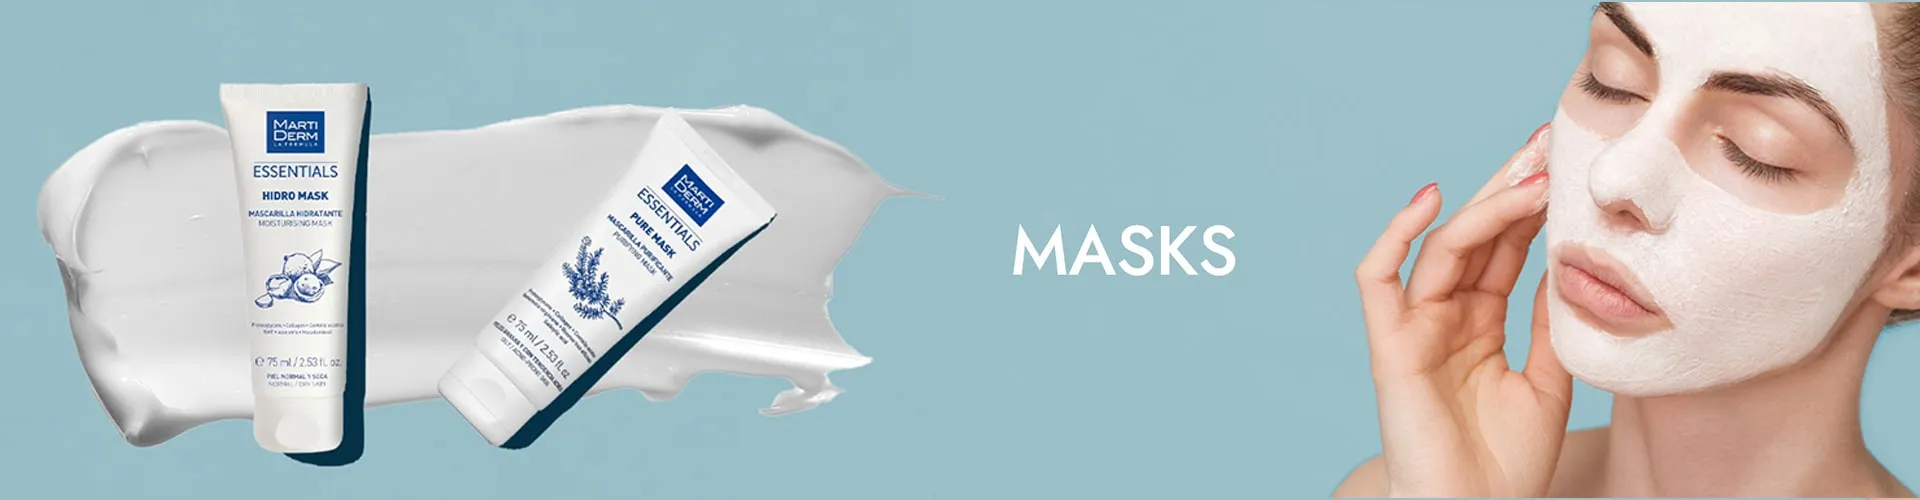 category_masks-min